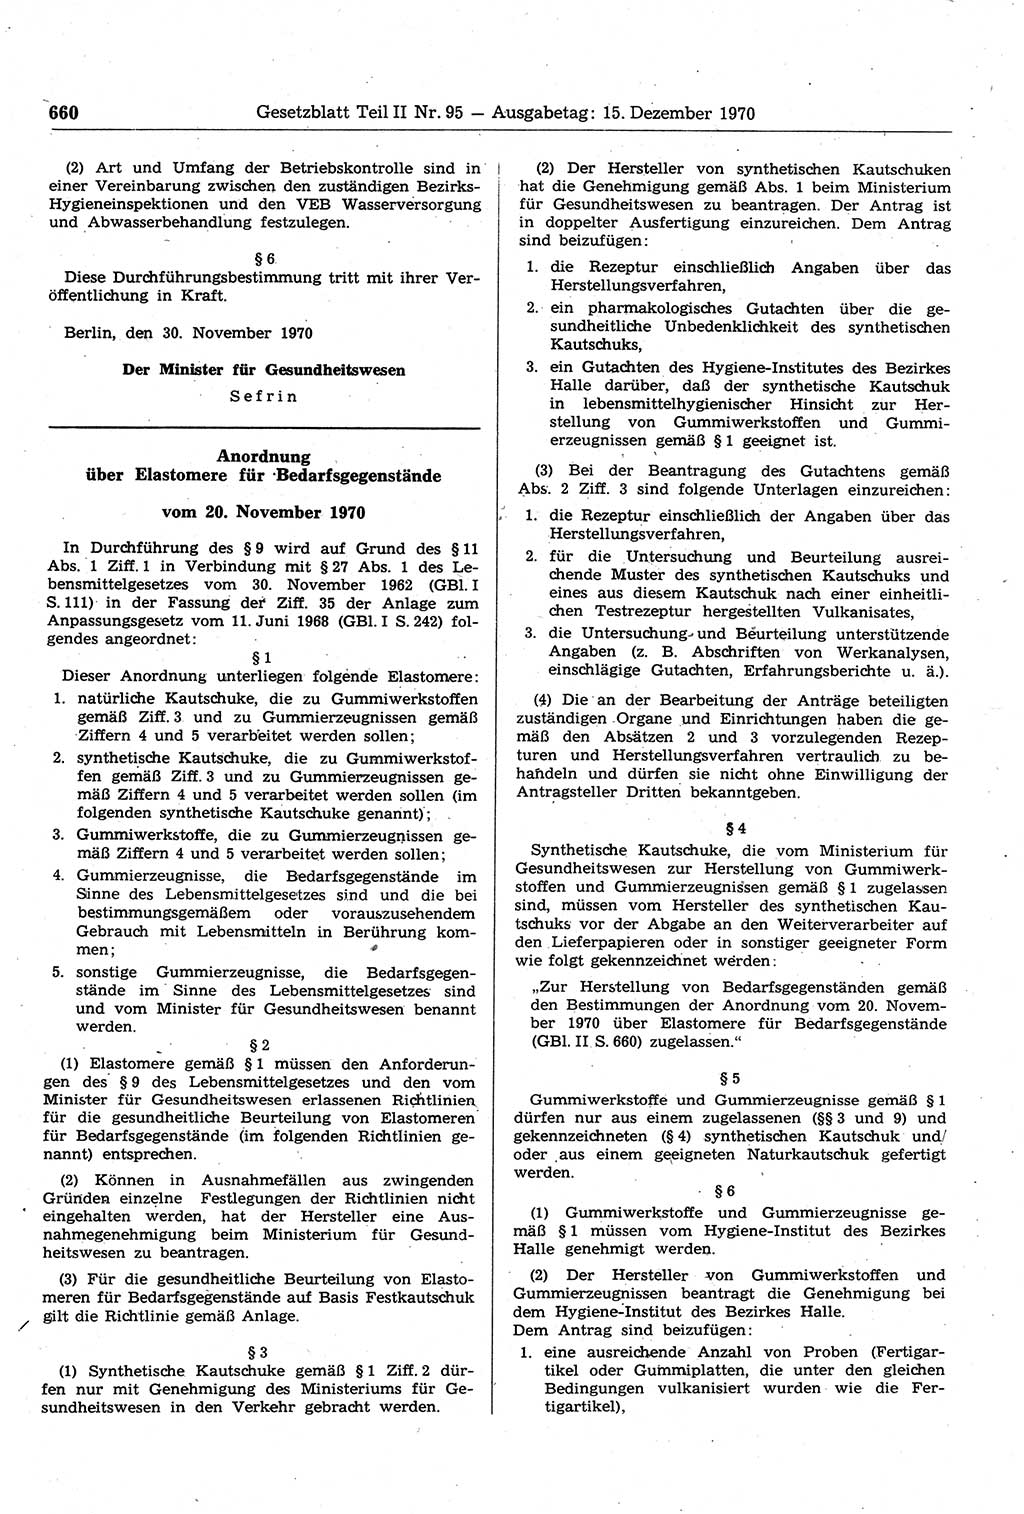 Gesetzblatt (GBl.) der Deutschen Demokratischen Republik (DDR) Teil ⅠⅠ 1970, Seite 660 (GBl. DDR ⅠⅠ 1970, S. 660)